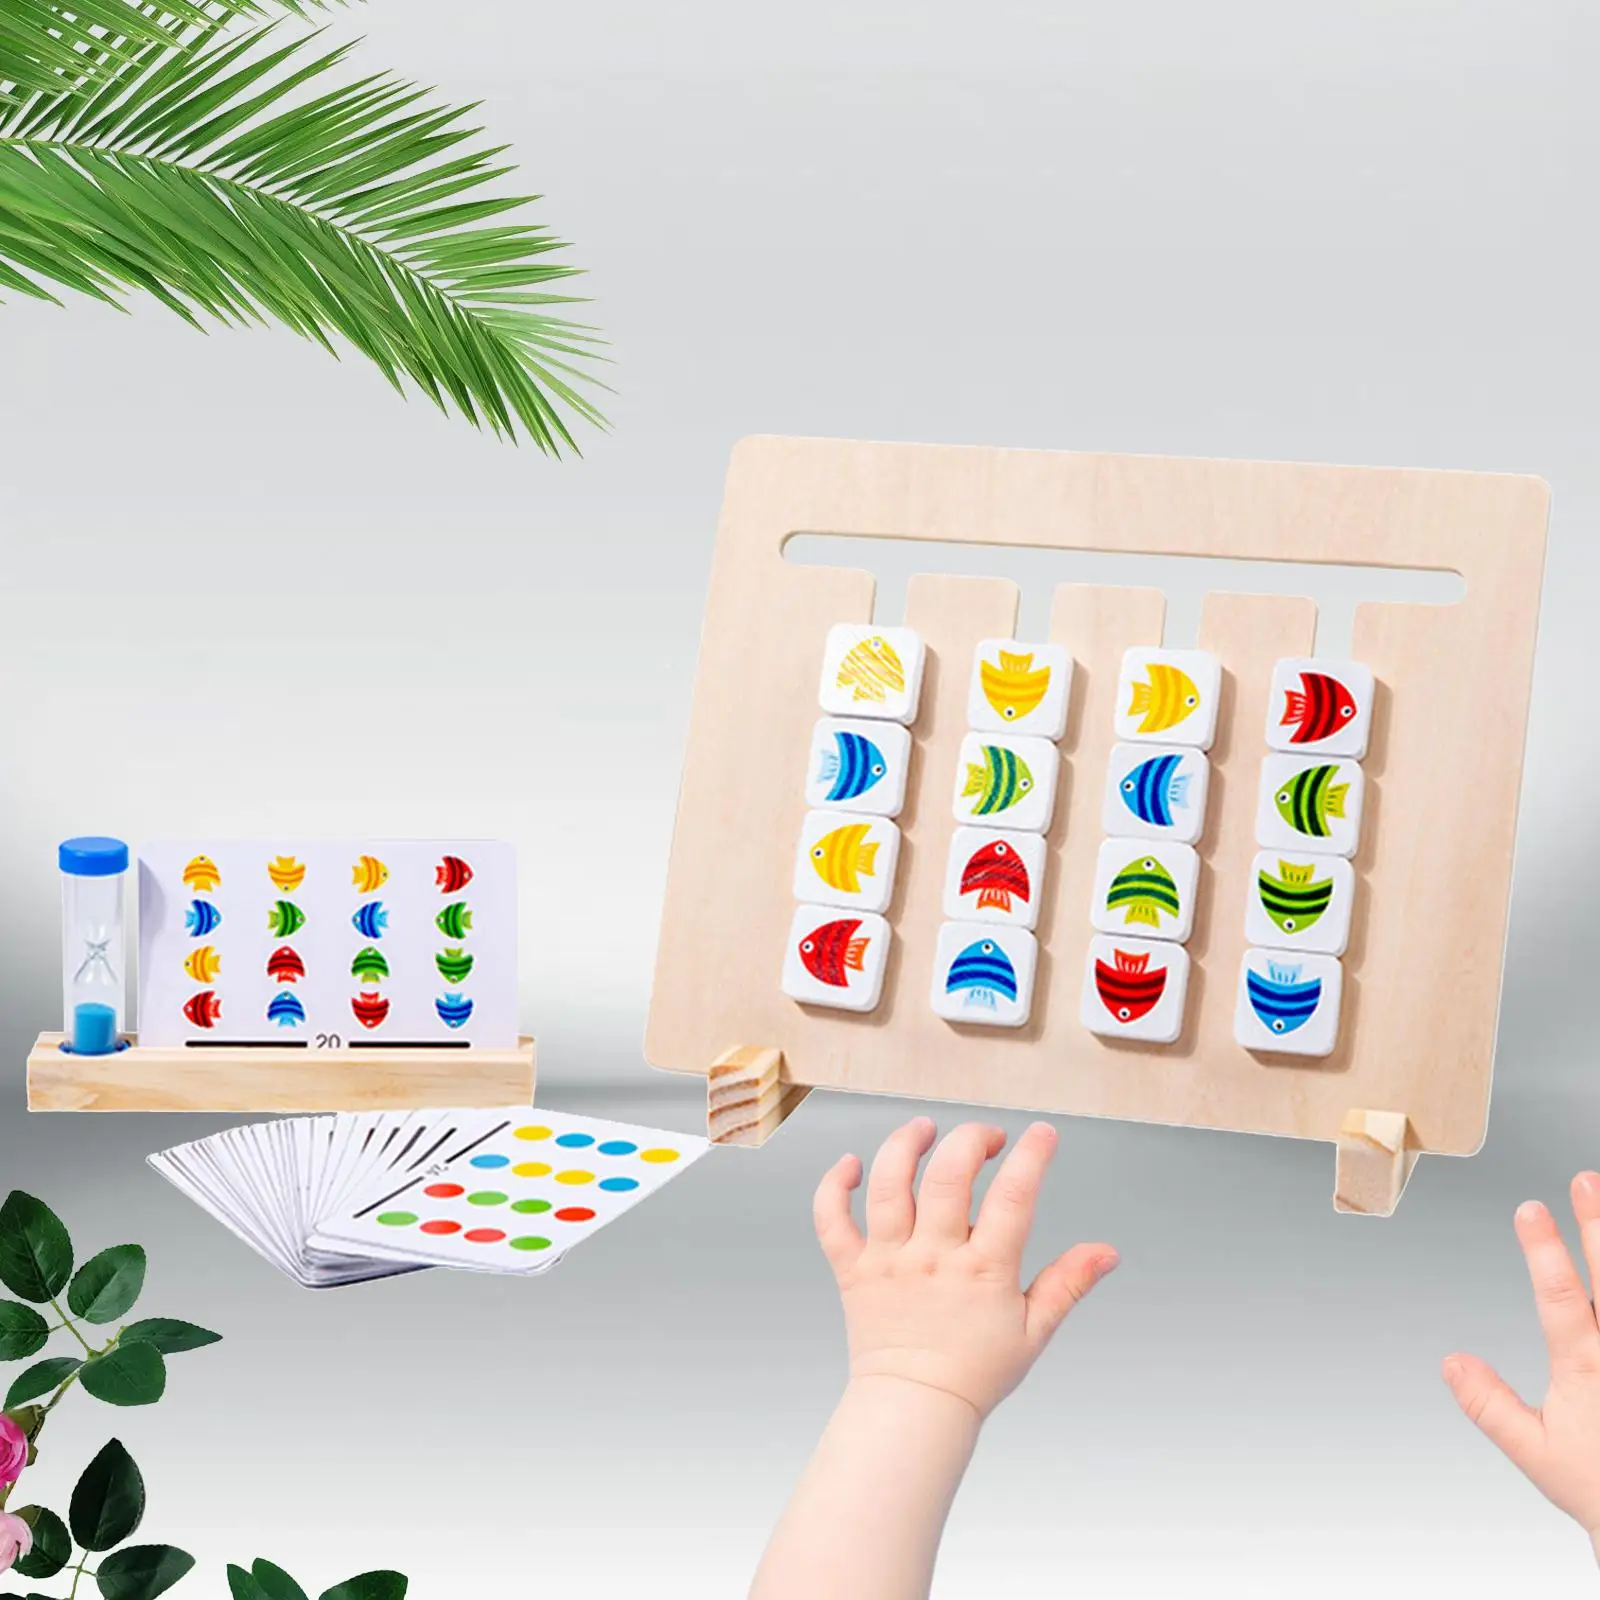 

Пазл деревянный раздвижной в форме и цвете, детская развивающая деревянная игрушка для дошкольного возраста, пазл-слайд, подходит для цветов и форм